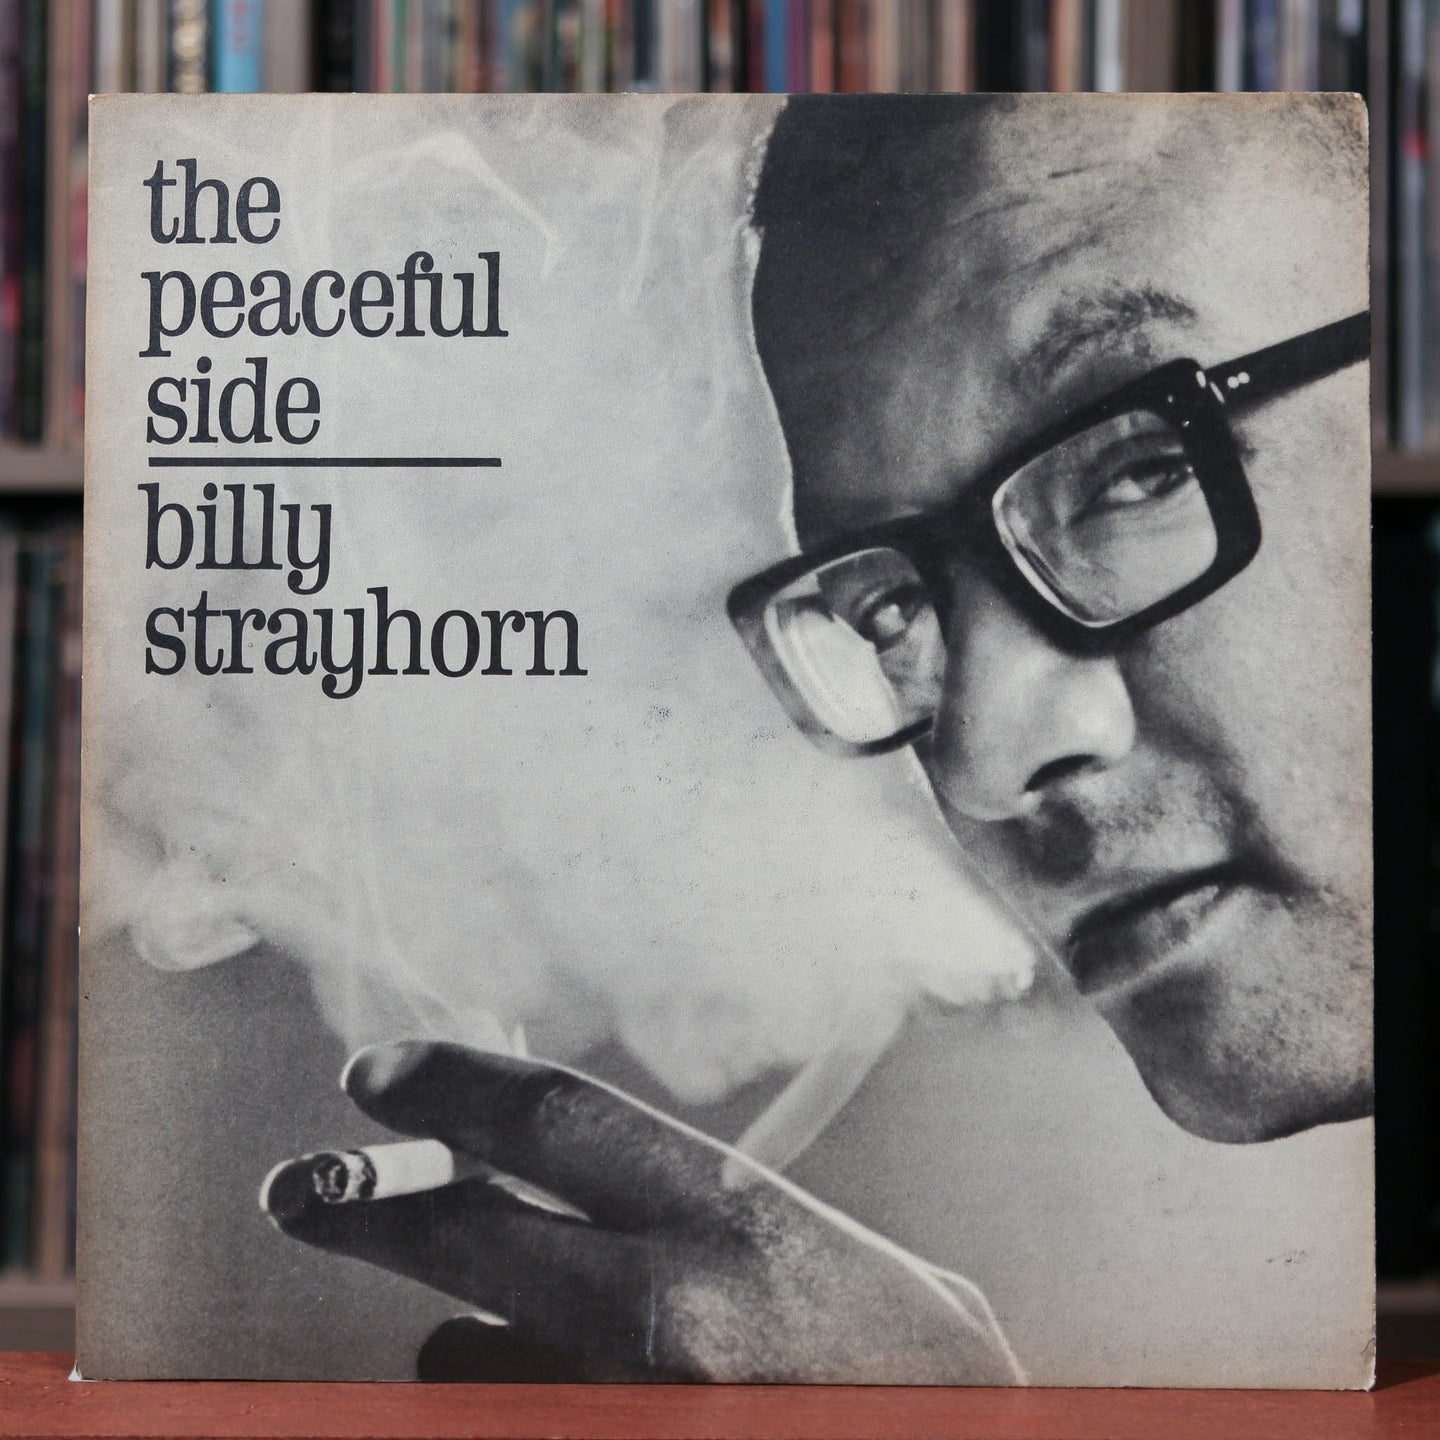 Billy Strayhorn - The Peaceful Side - 1963 United Artist - EX/VG+